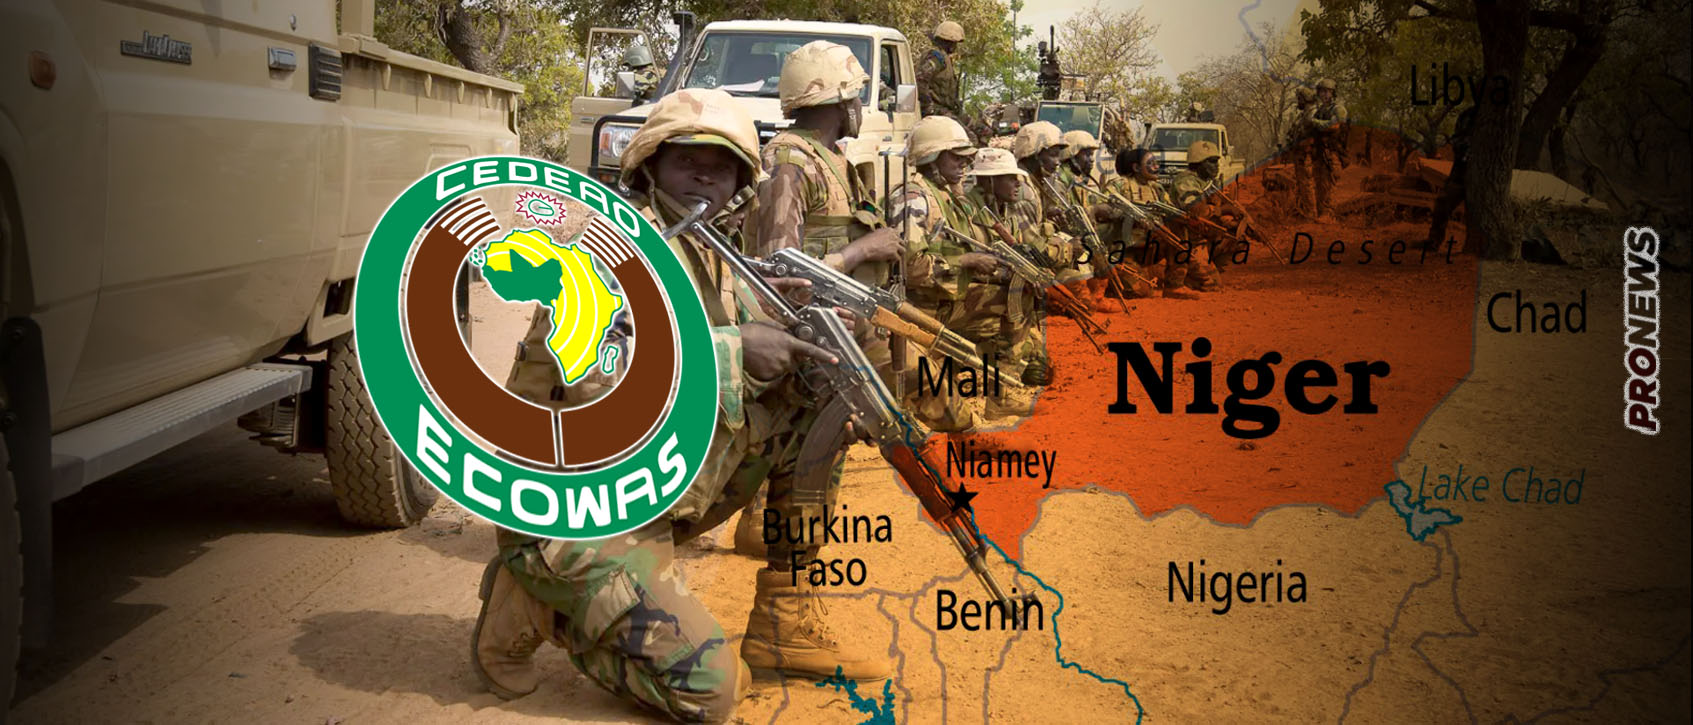 Η ECOWAS ετοιμάζει εισβολή στο Νίγηρα – Η νέα κυβέρνηση άνοιξε σύνορα & εναέριο χώρο για Αλγερία, Τσαντ, Μάλι, Μπουρκίνα Φάσο, Λιβύη